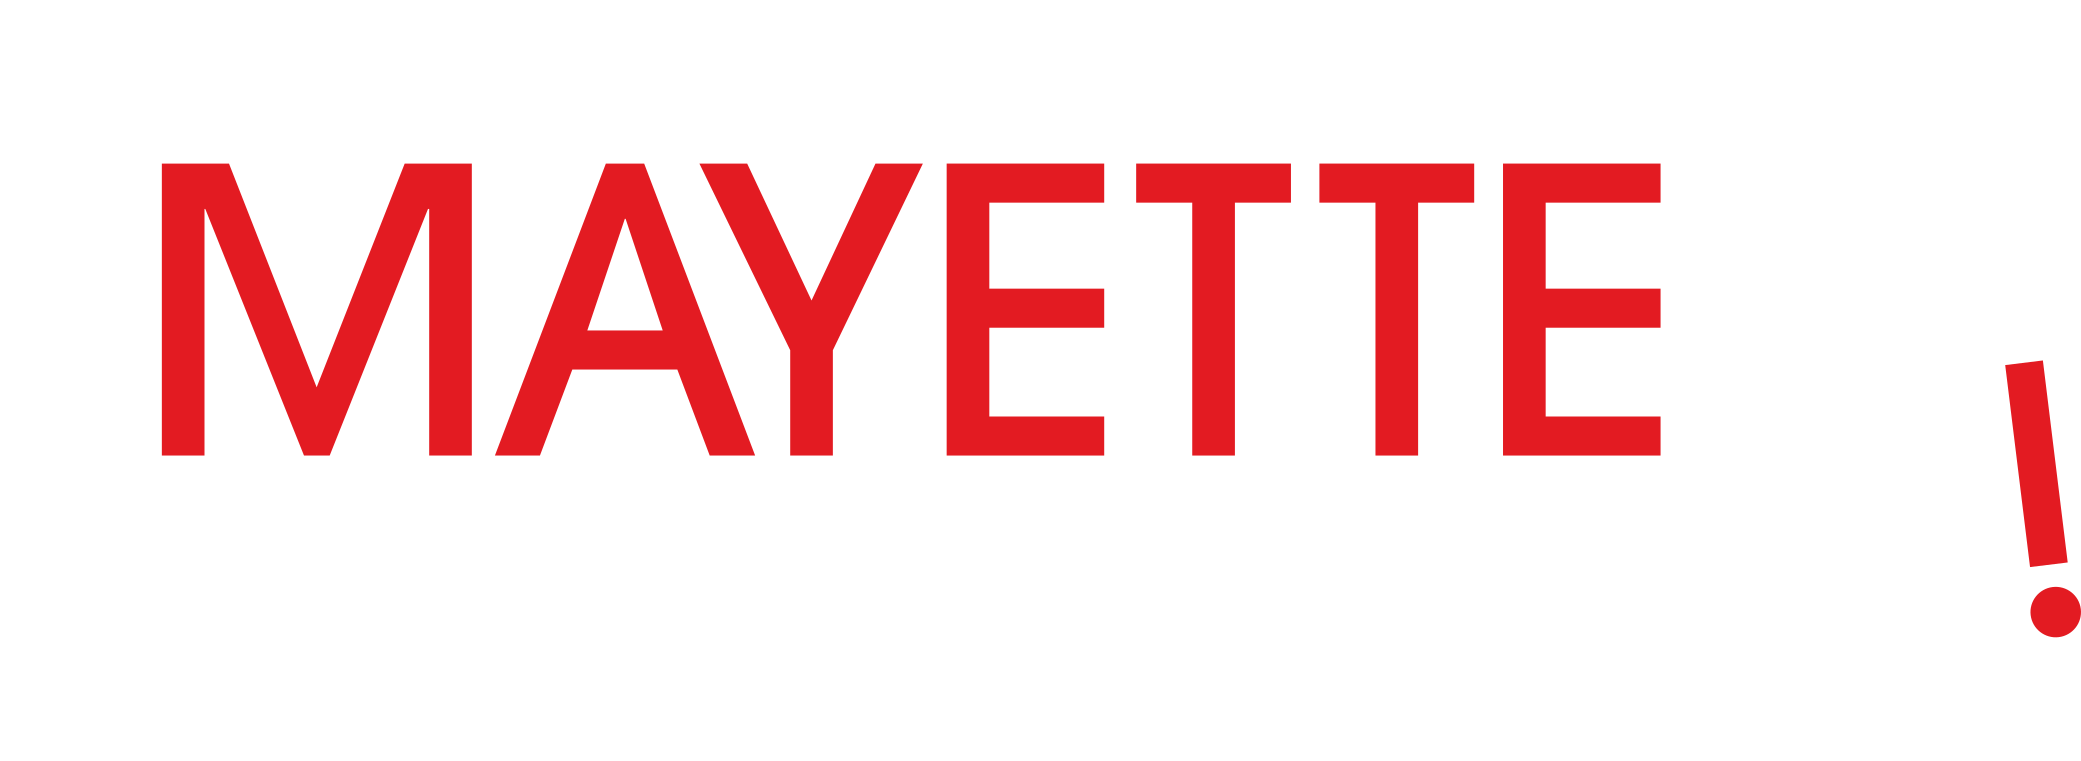 Logo Mayette Blanc et Rouge Vif 2014